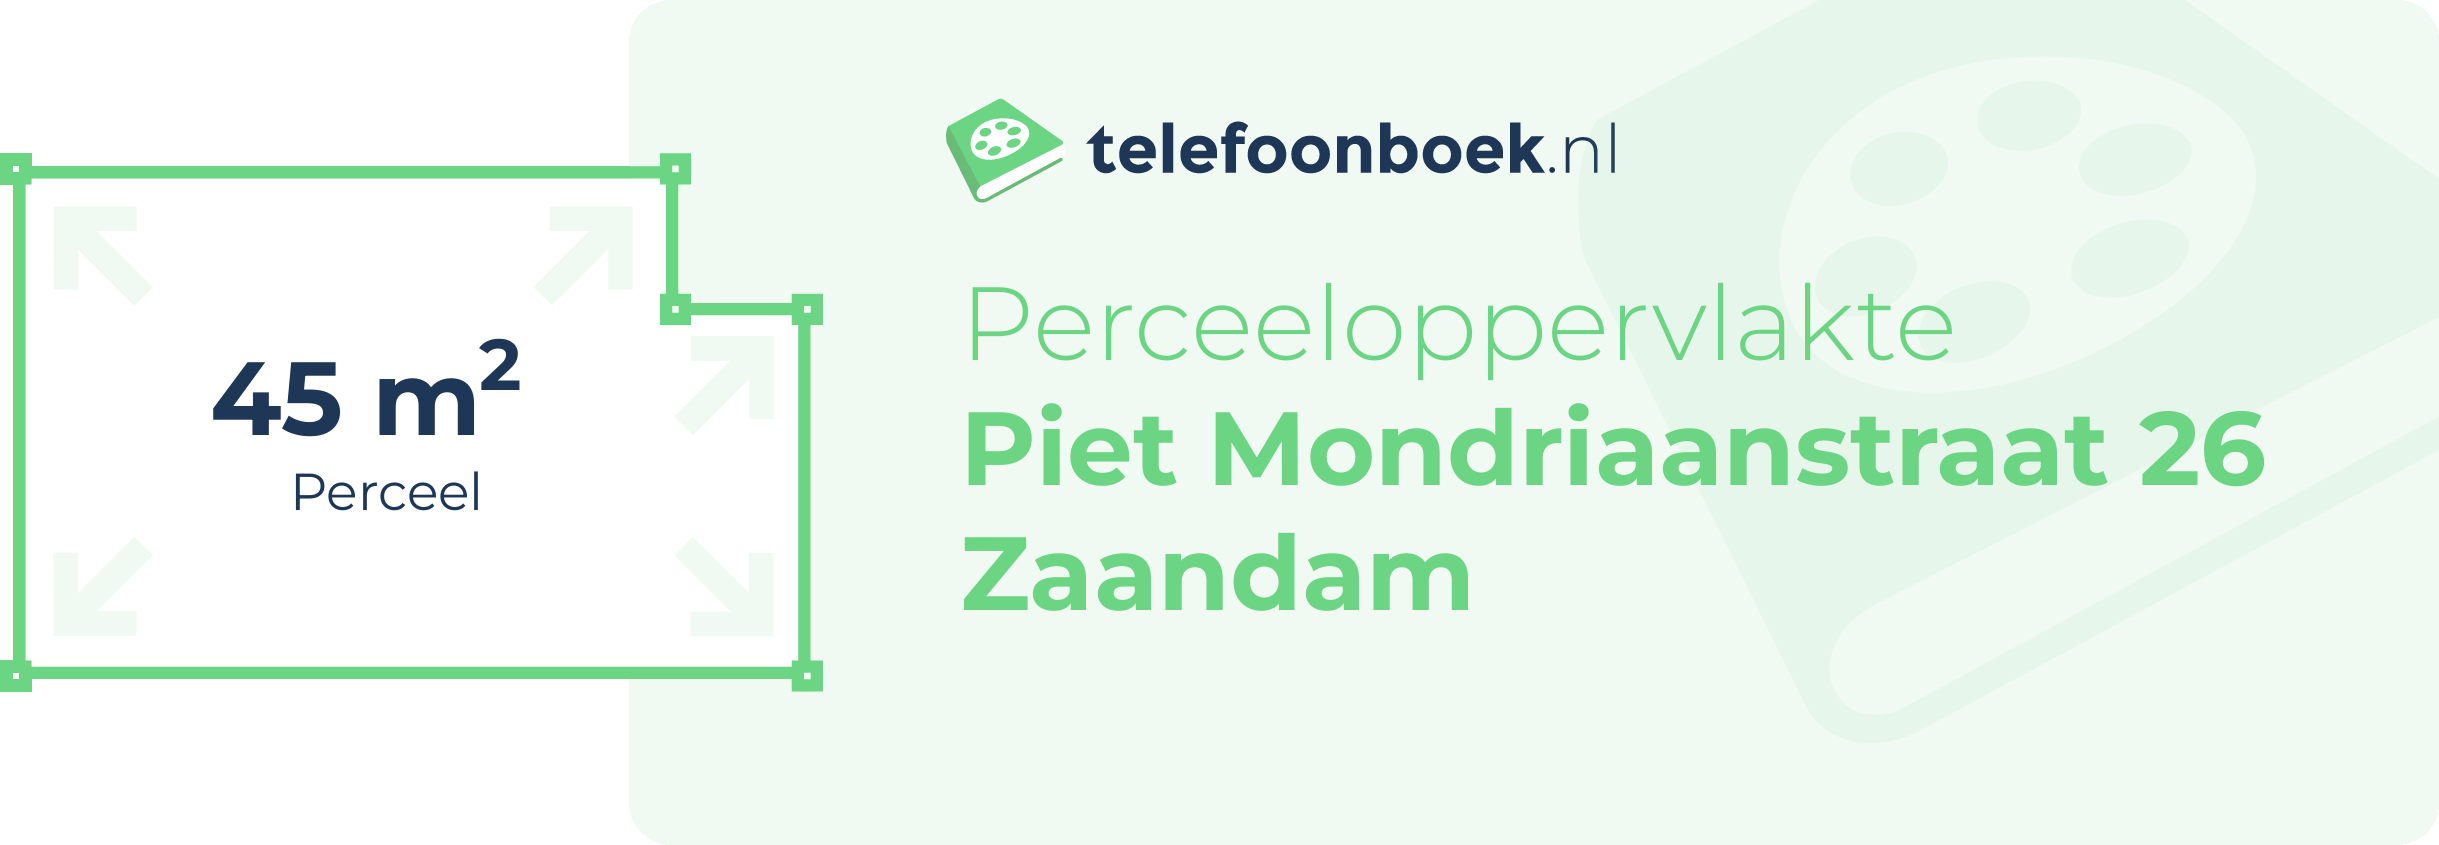 Perceeloppervlakte Piet Mondriaanstraat 26 Zaandam